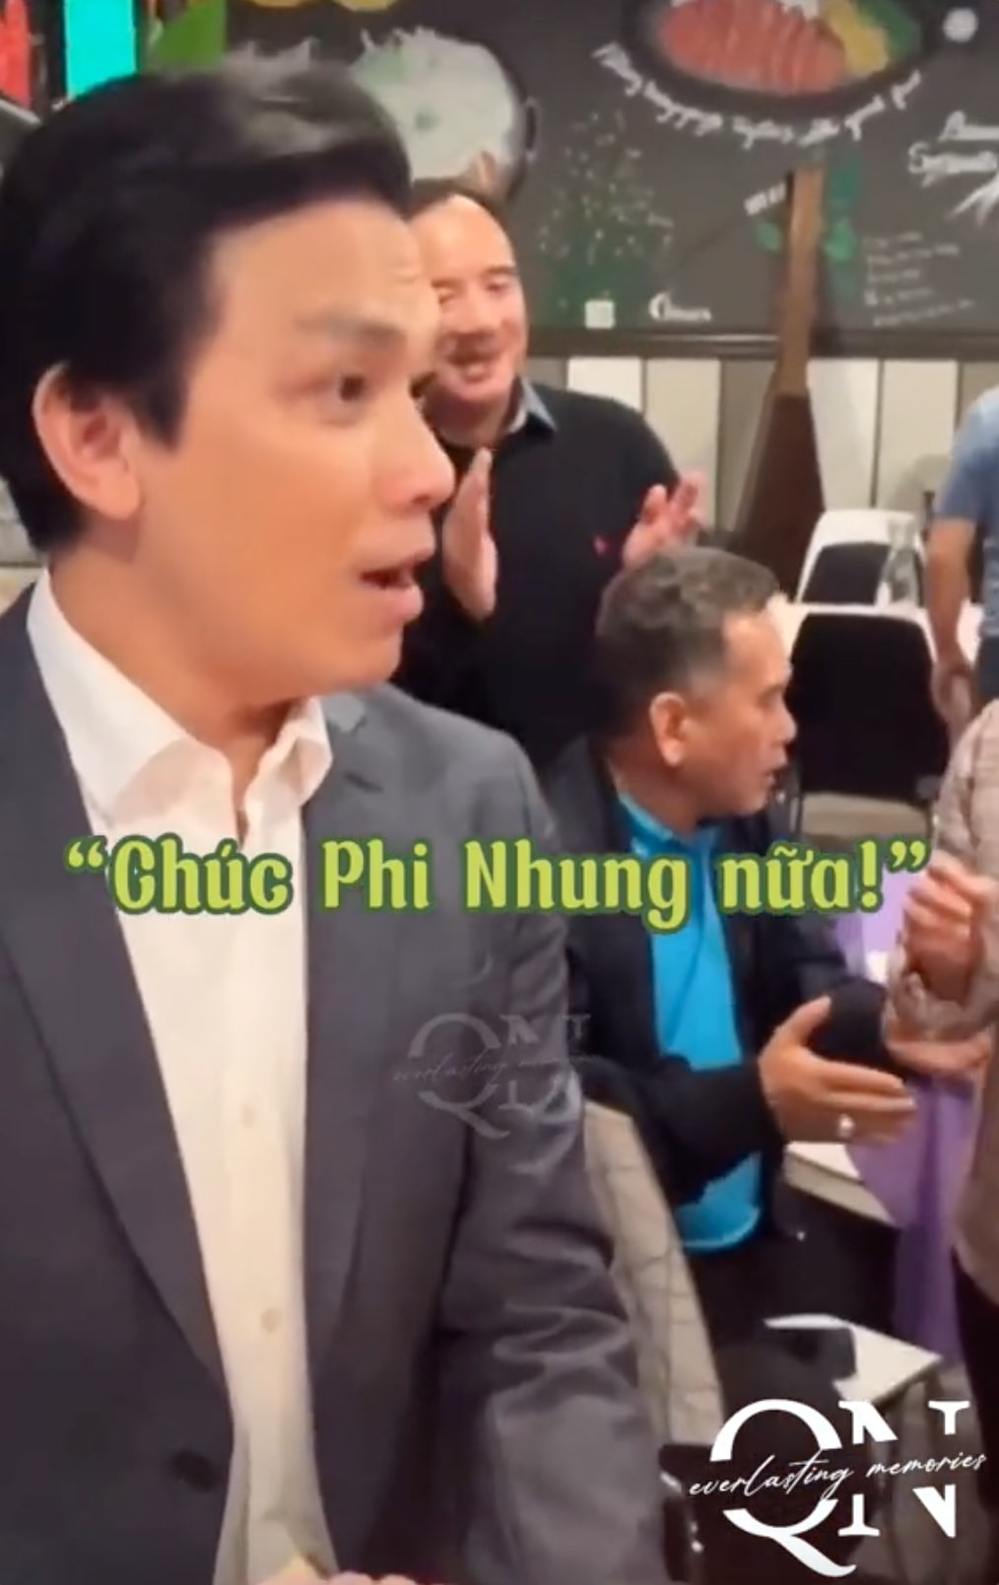  Nam ca sĩ nhắc nhở mọi người phải hát chúc mừng cho cả Phi Nhung. (Ảnh: TikTok zhang0202) - Tin sao Viet - Tin tuc sao Viet - Scandal sao Viet - Tin tuc cua Sao - Tin cua Sao